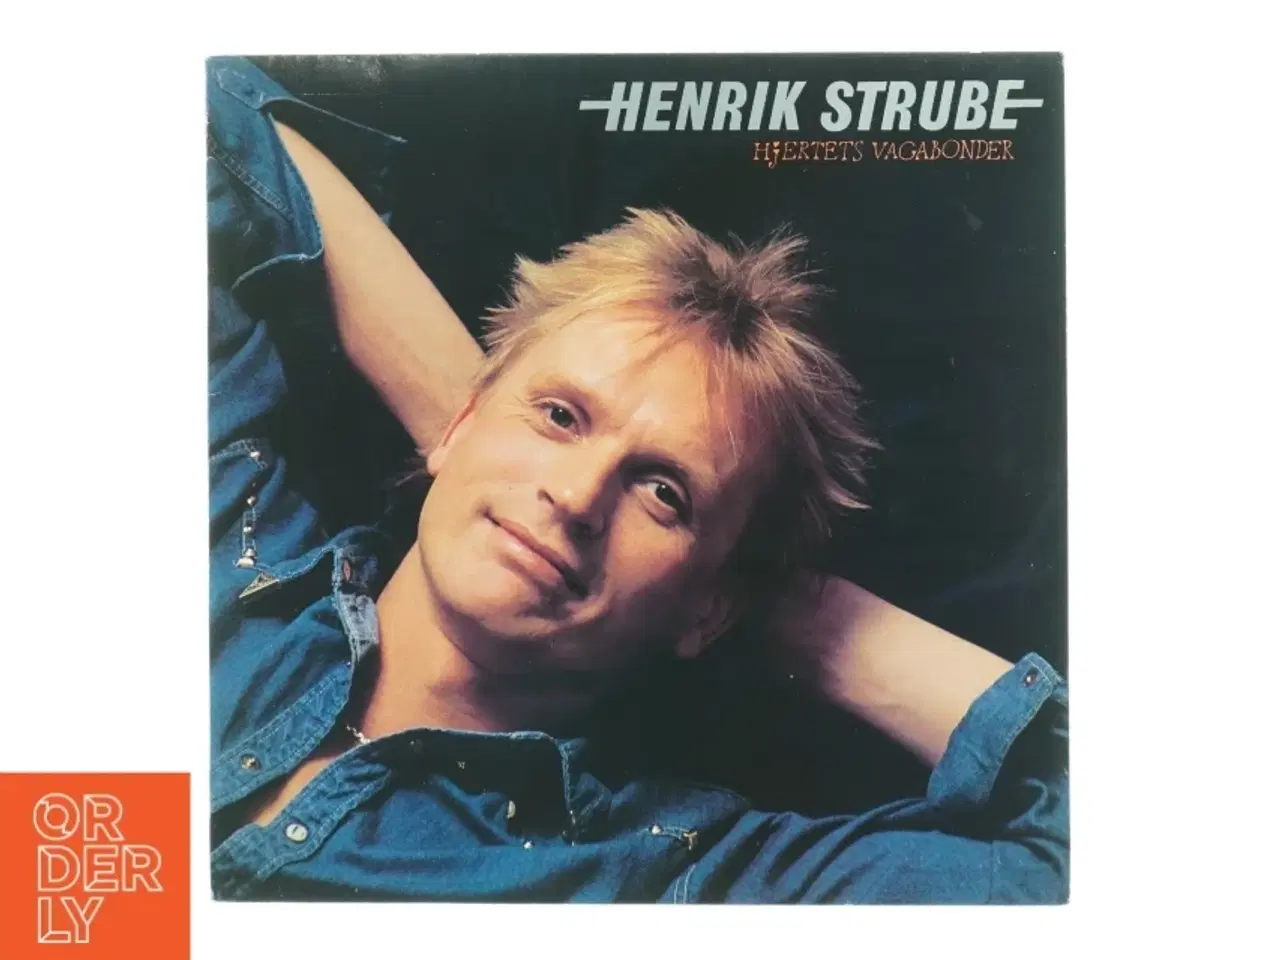 Billede 1 - Henrik Strube - Hjertets Vagabonder Vinyl LP fra CBS Records (str. 31 x 31 cm)